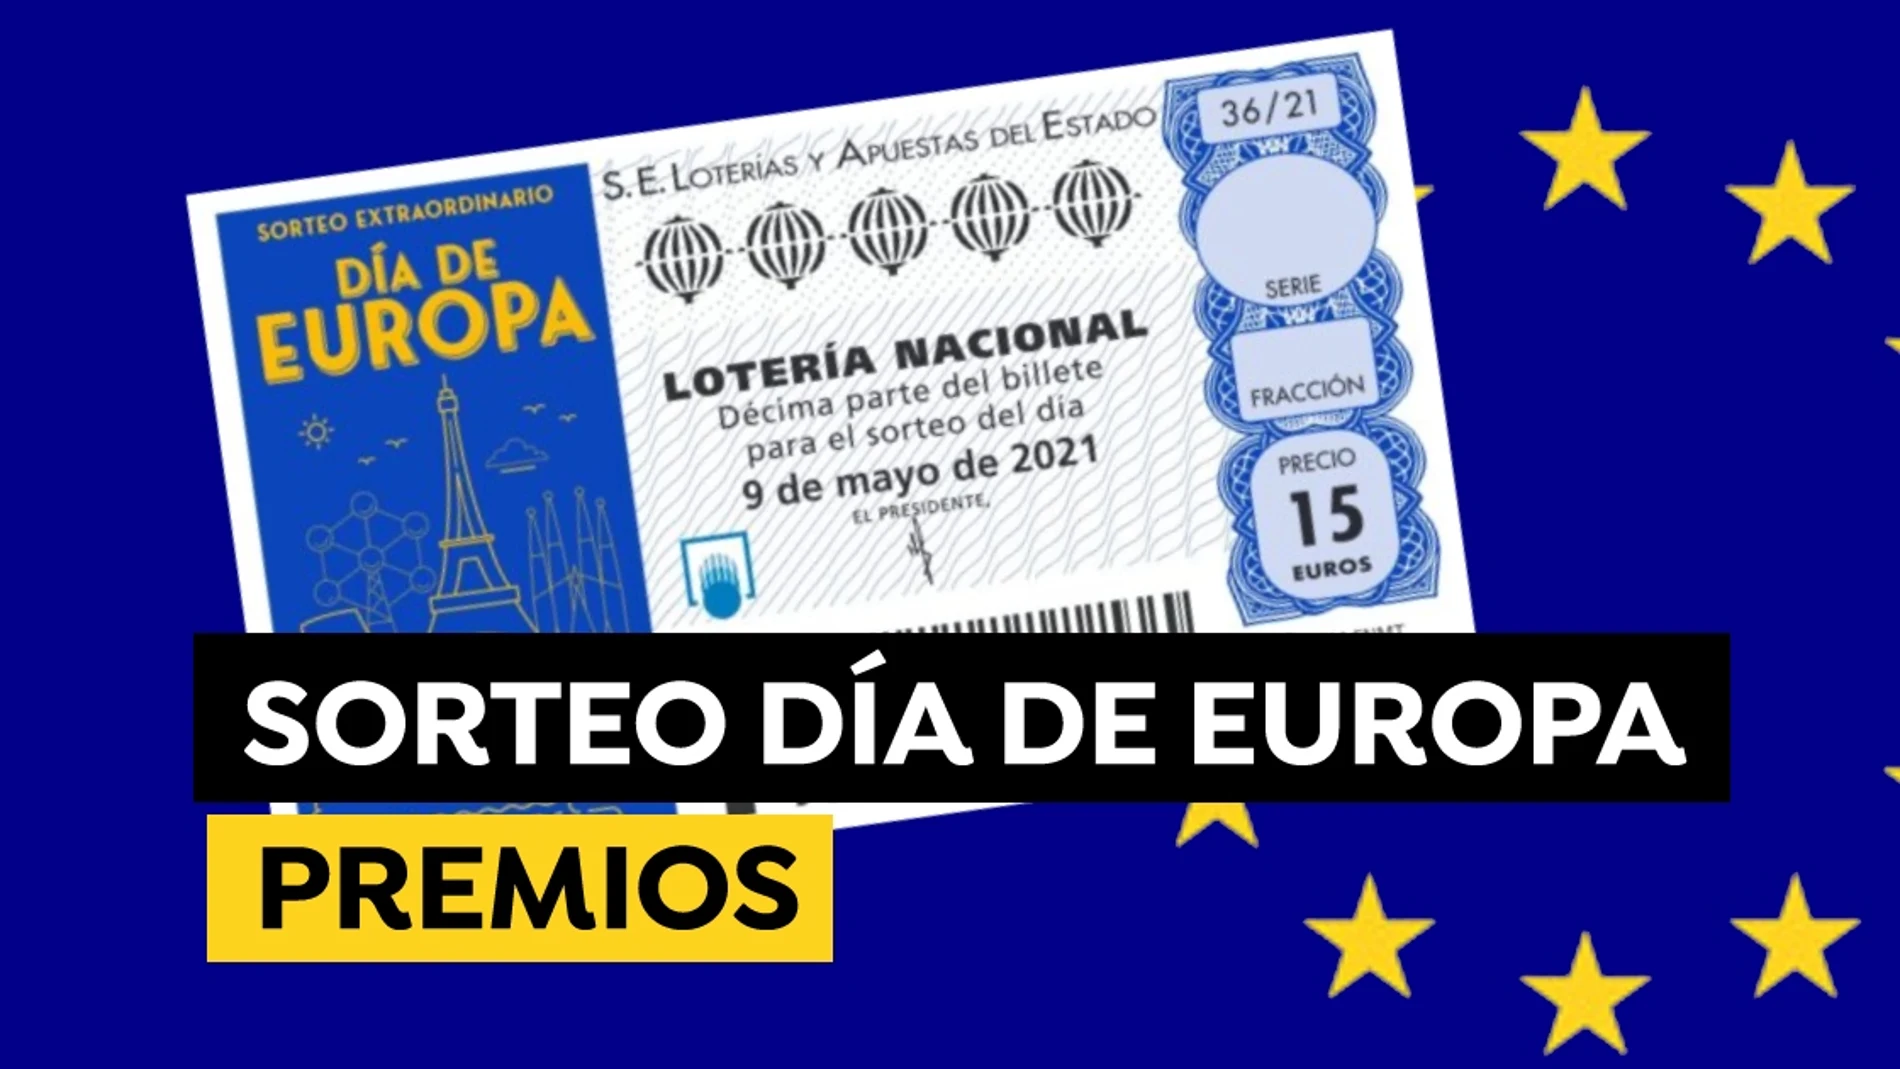 Sorteo Extraordinario de la Lotería Nacional del Día de Europa: ¿Qué premios se reparten?